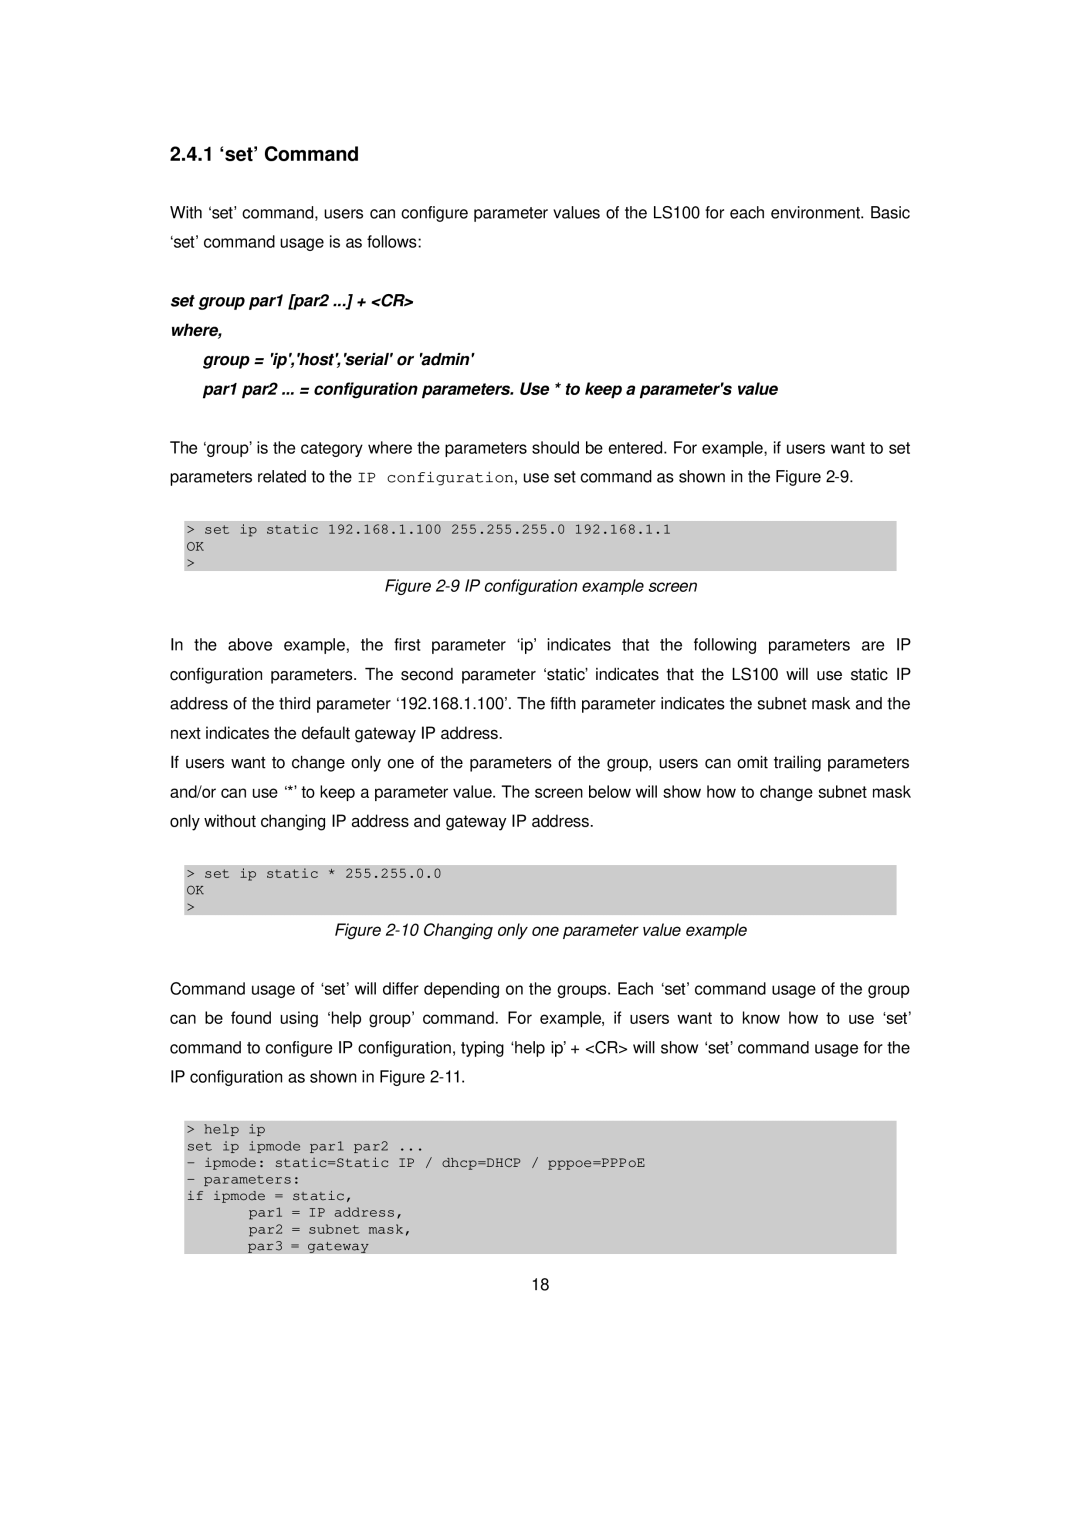 Senatek LS100 manual 1 ‘set’ Command, IP configuration example screen 